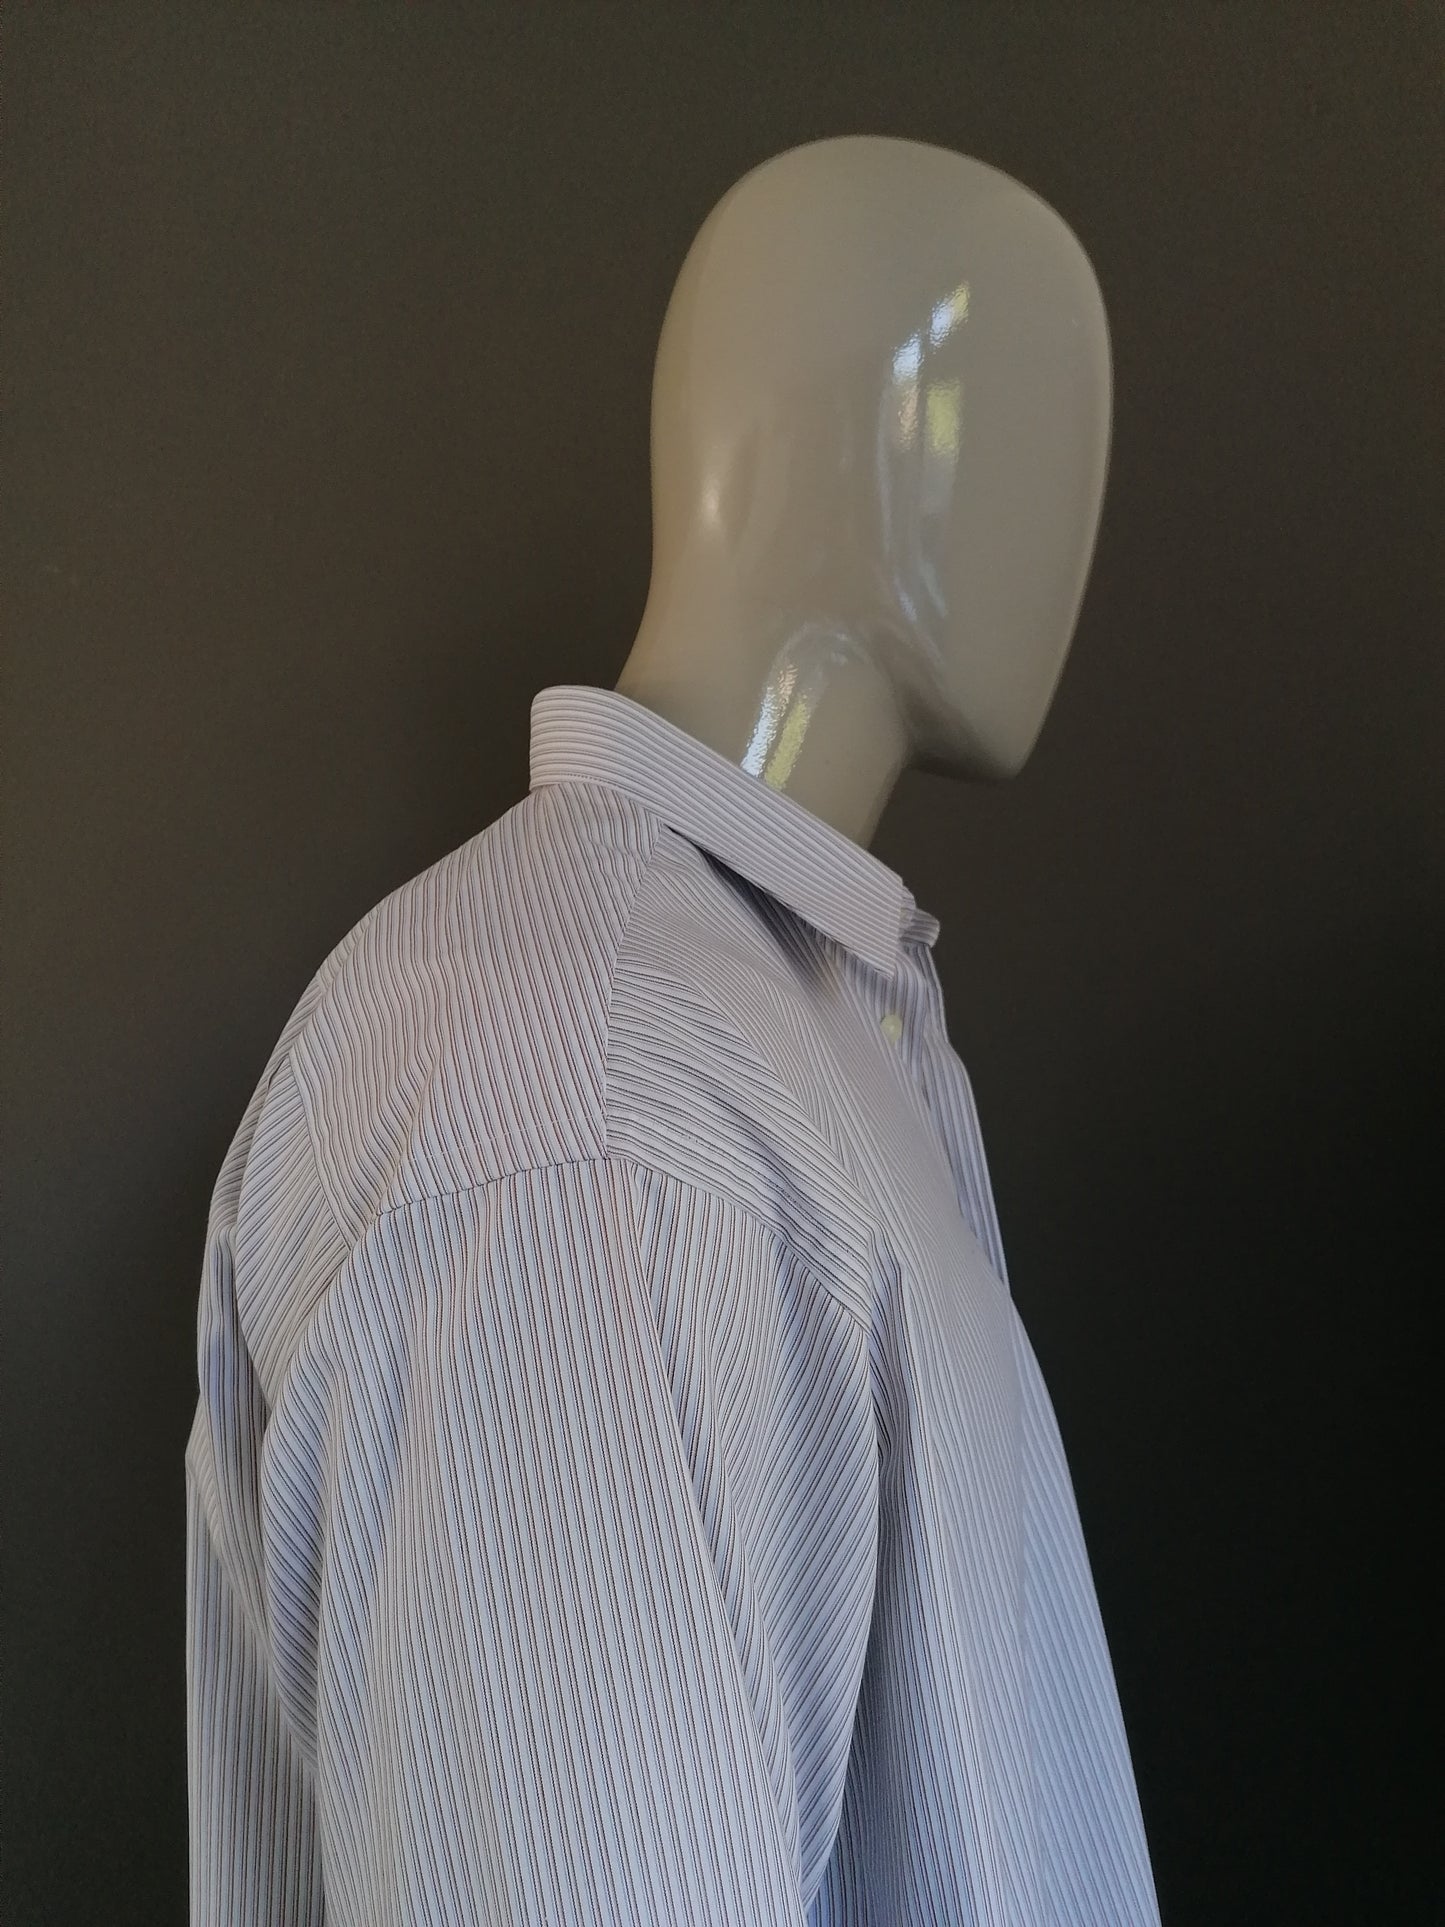 Seidesticker Splendendo Shirt. Blanco azul marrón a rayas. Tamaño 3xl / xxxl